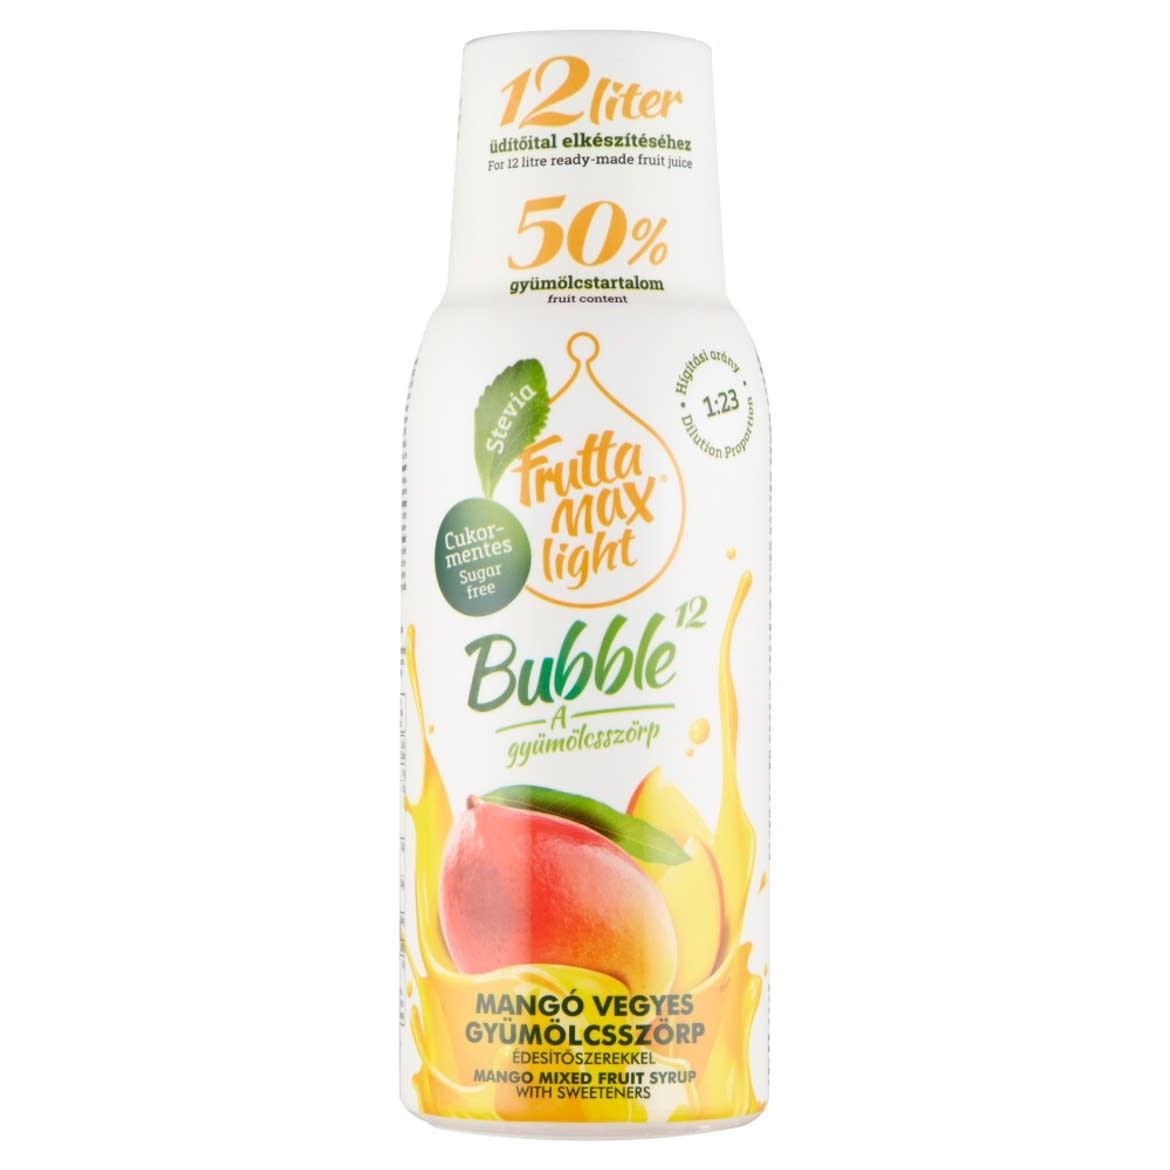 FruttaMax Bubble¹² mangó vegyes gyümölcsszörp cukorral és édesítőszerekkel